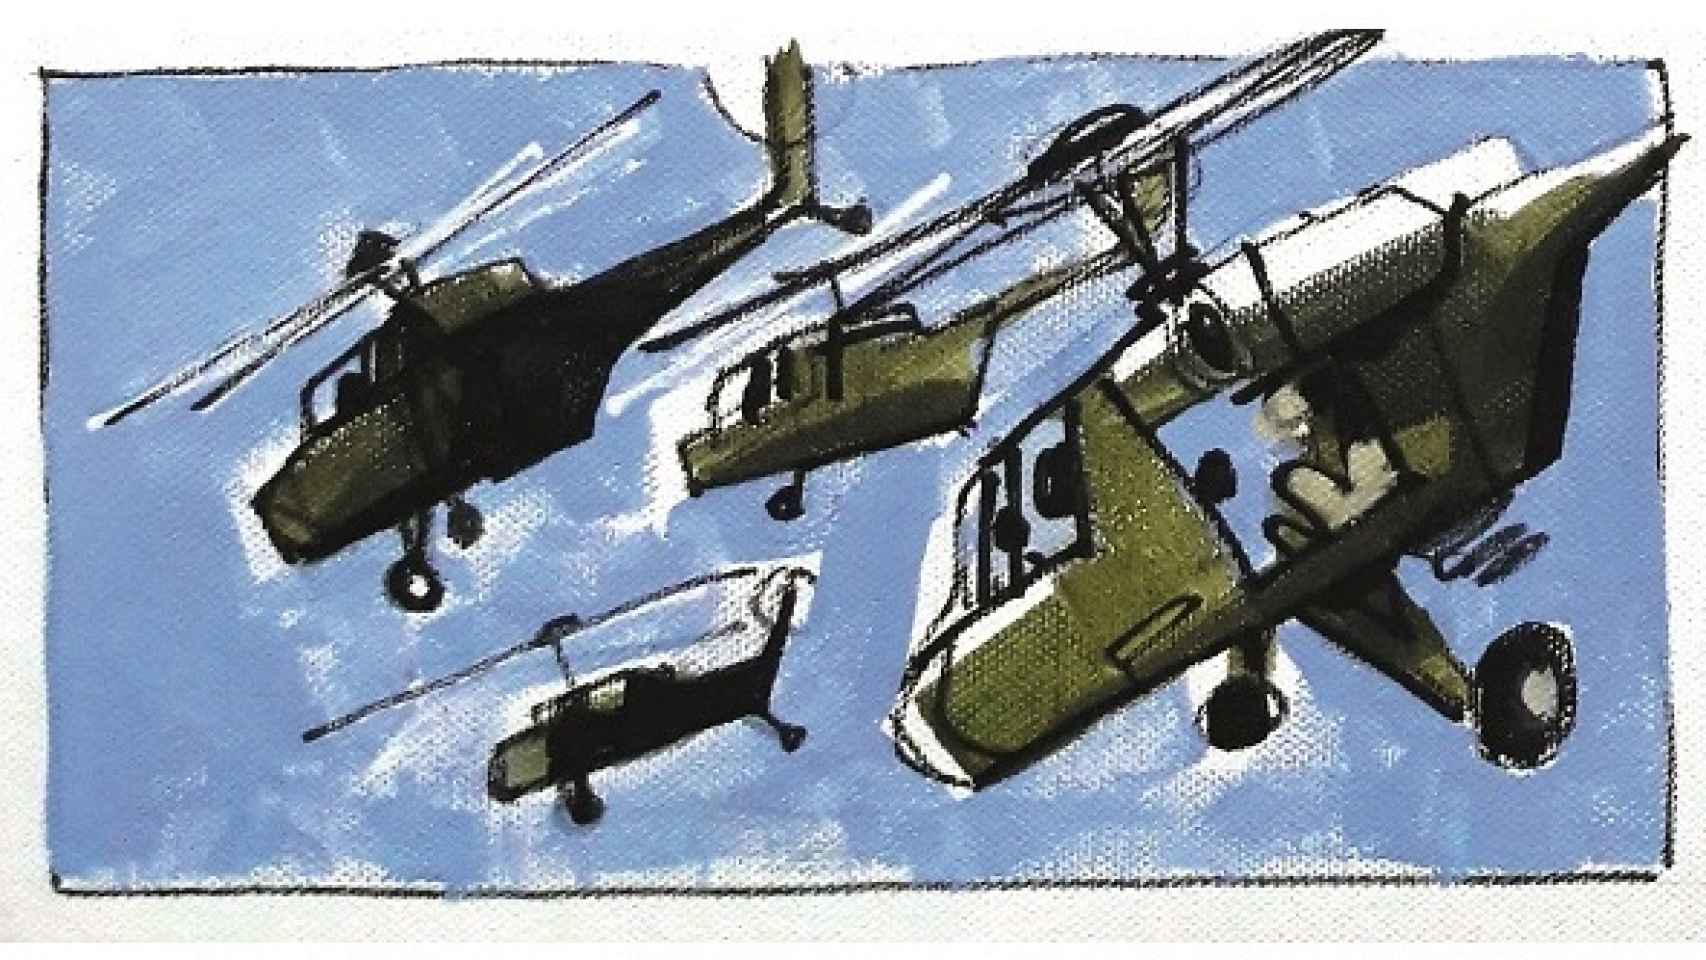 La llegada de los helicópteros cambió el transcurso de la batalla.